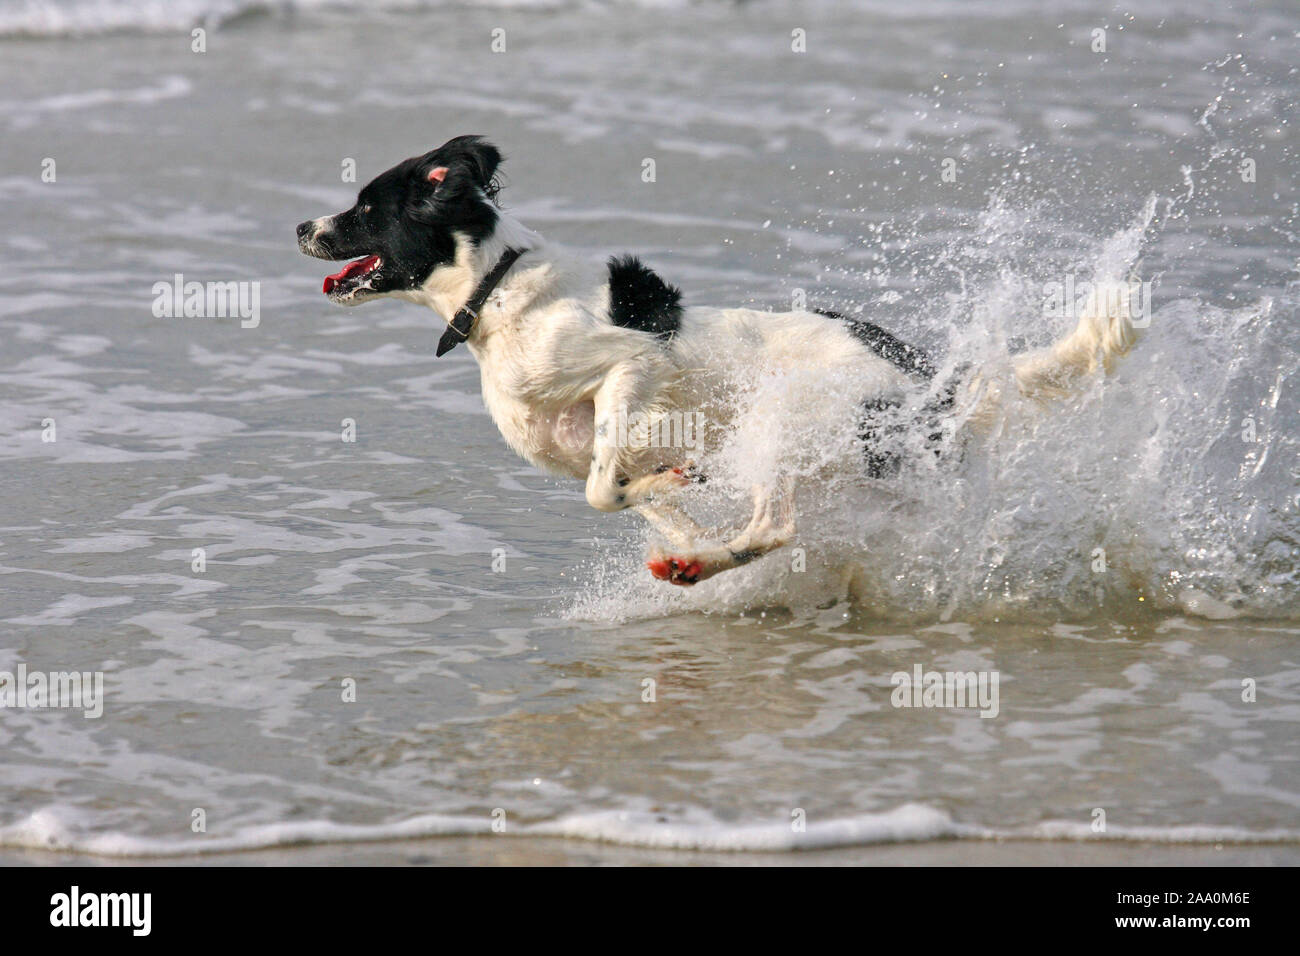 Hund rennt im Meer, Nordsee Stock Photo